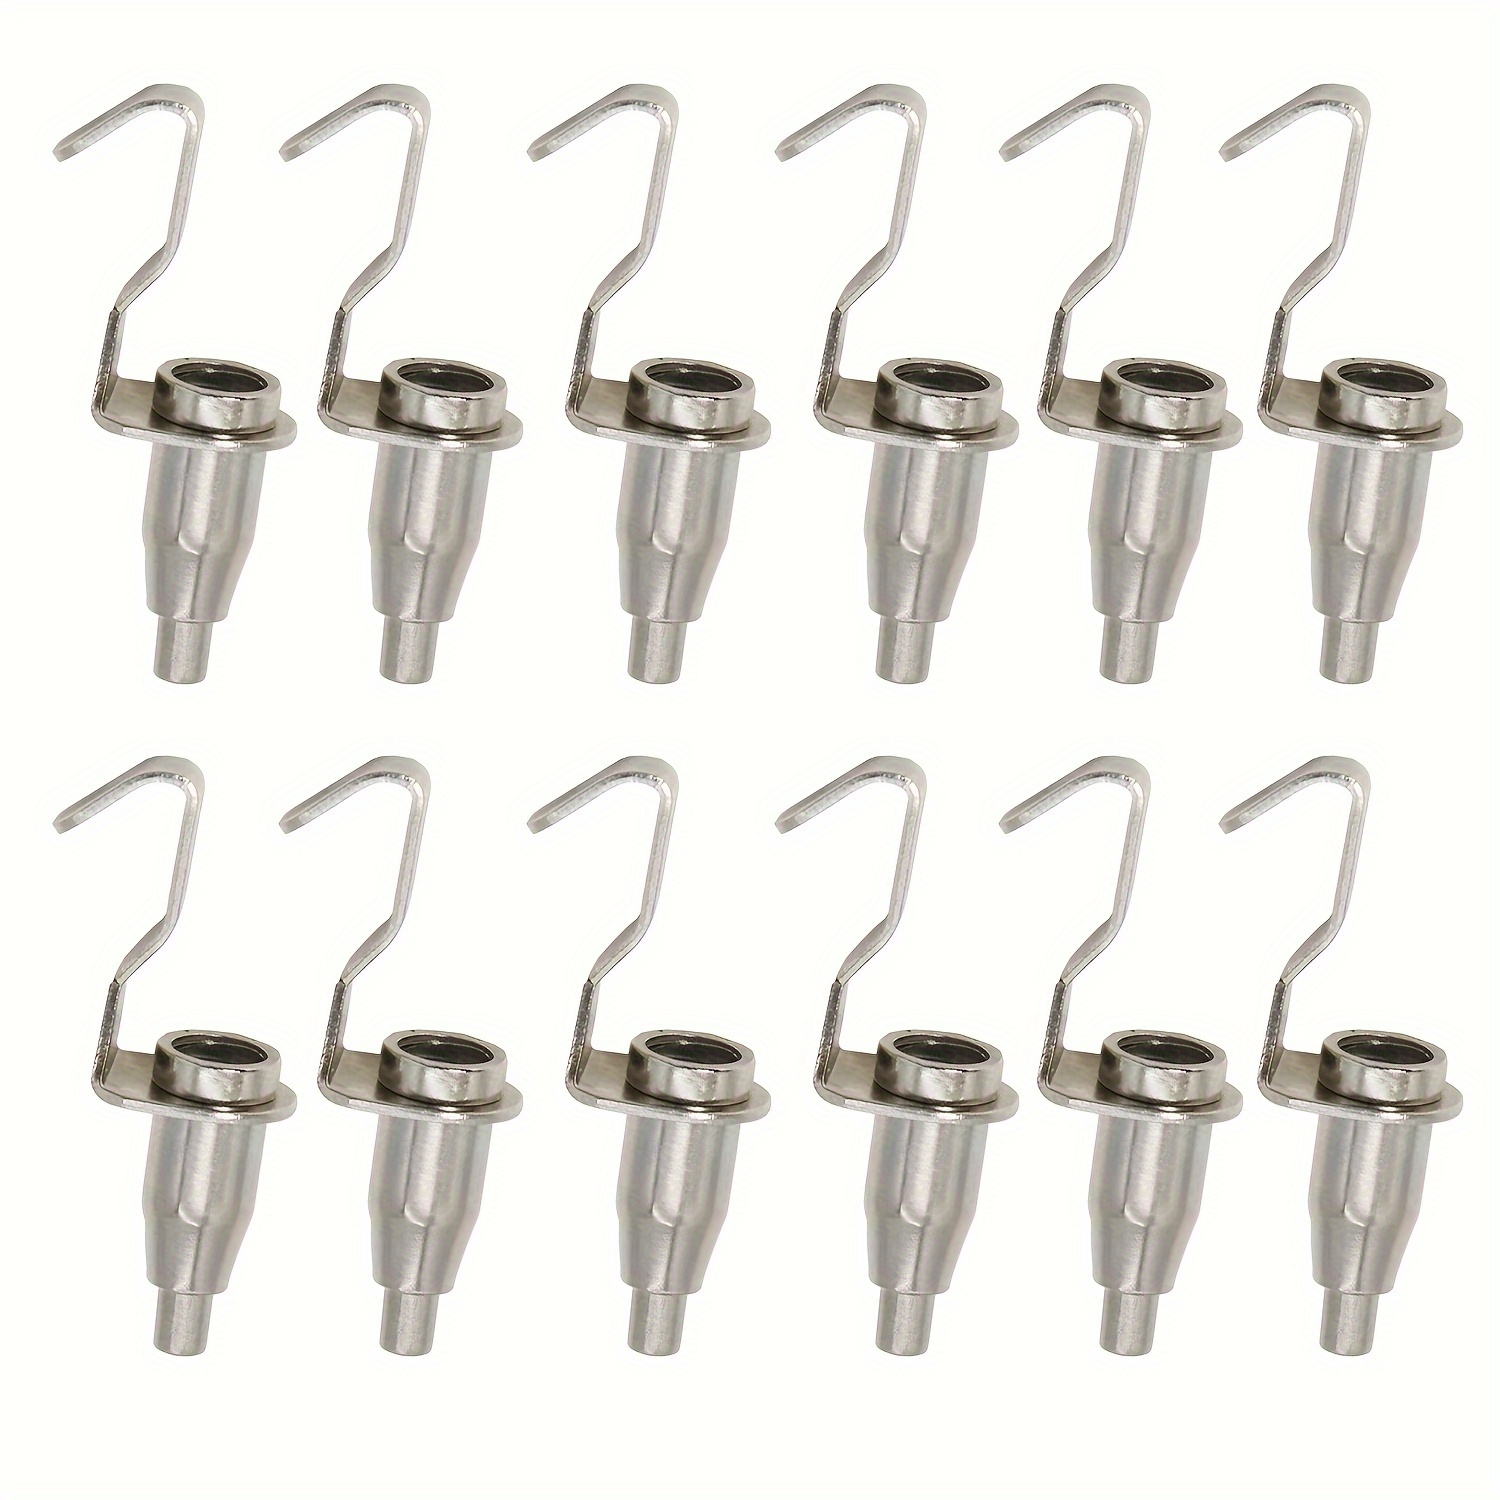 Fbaby 20 Pcs Adjustable Metal Art Gallery Display Hanger Hooks